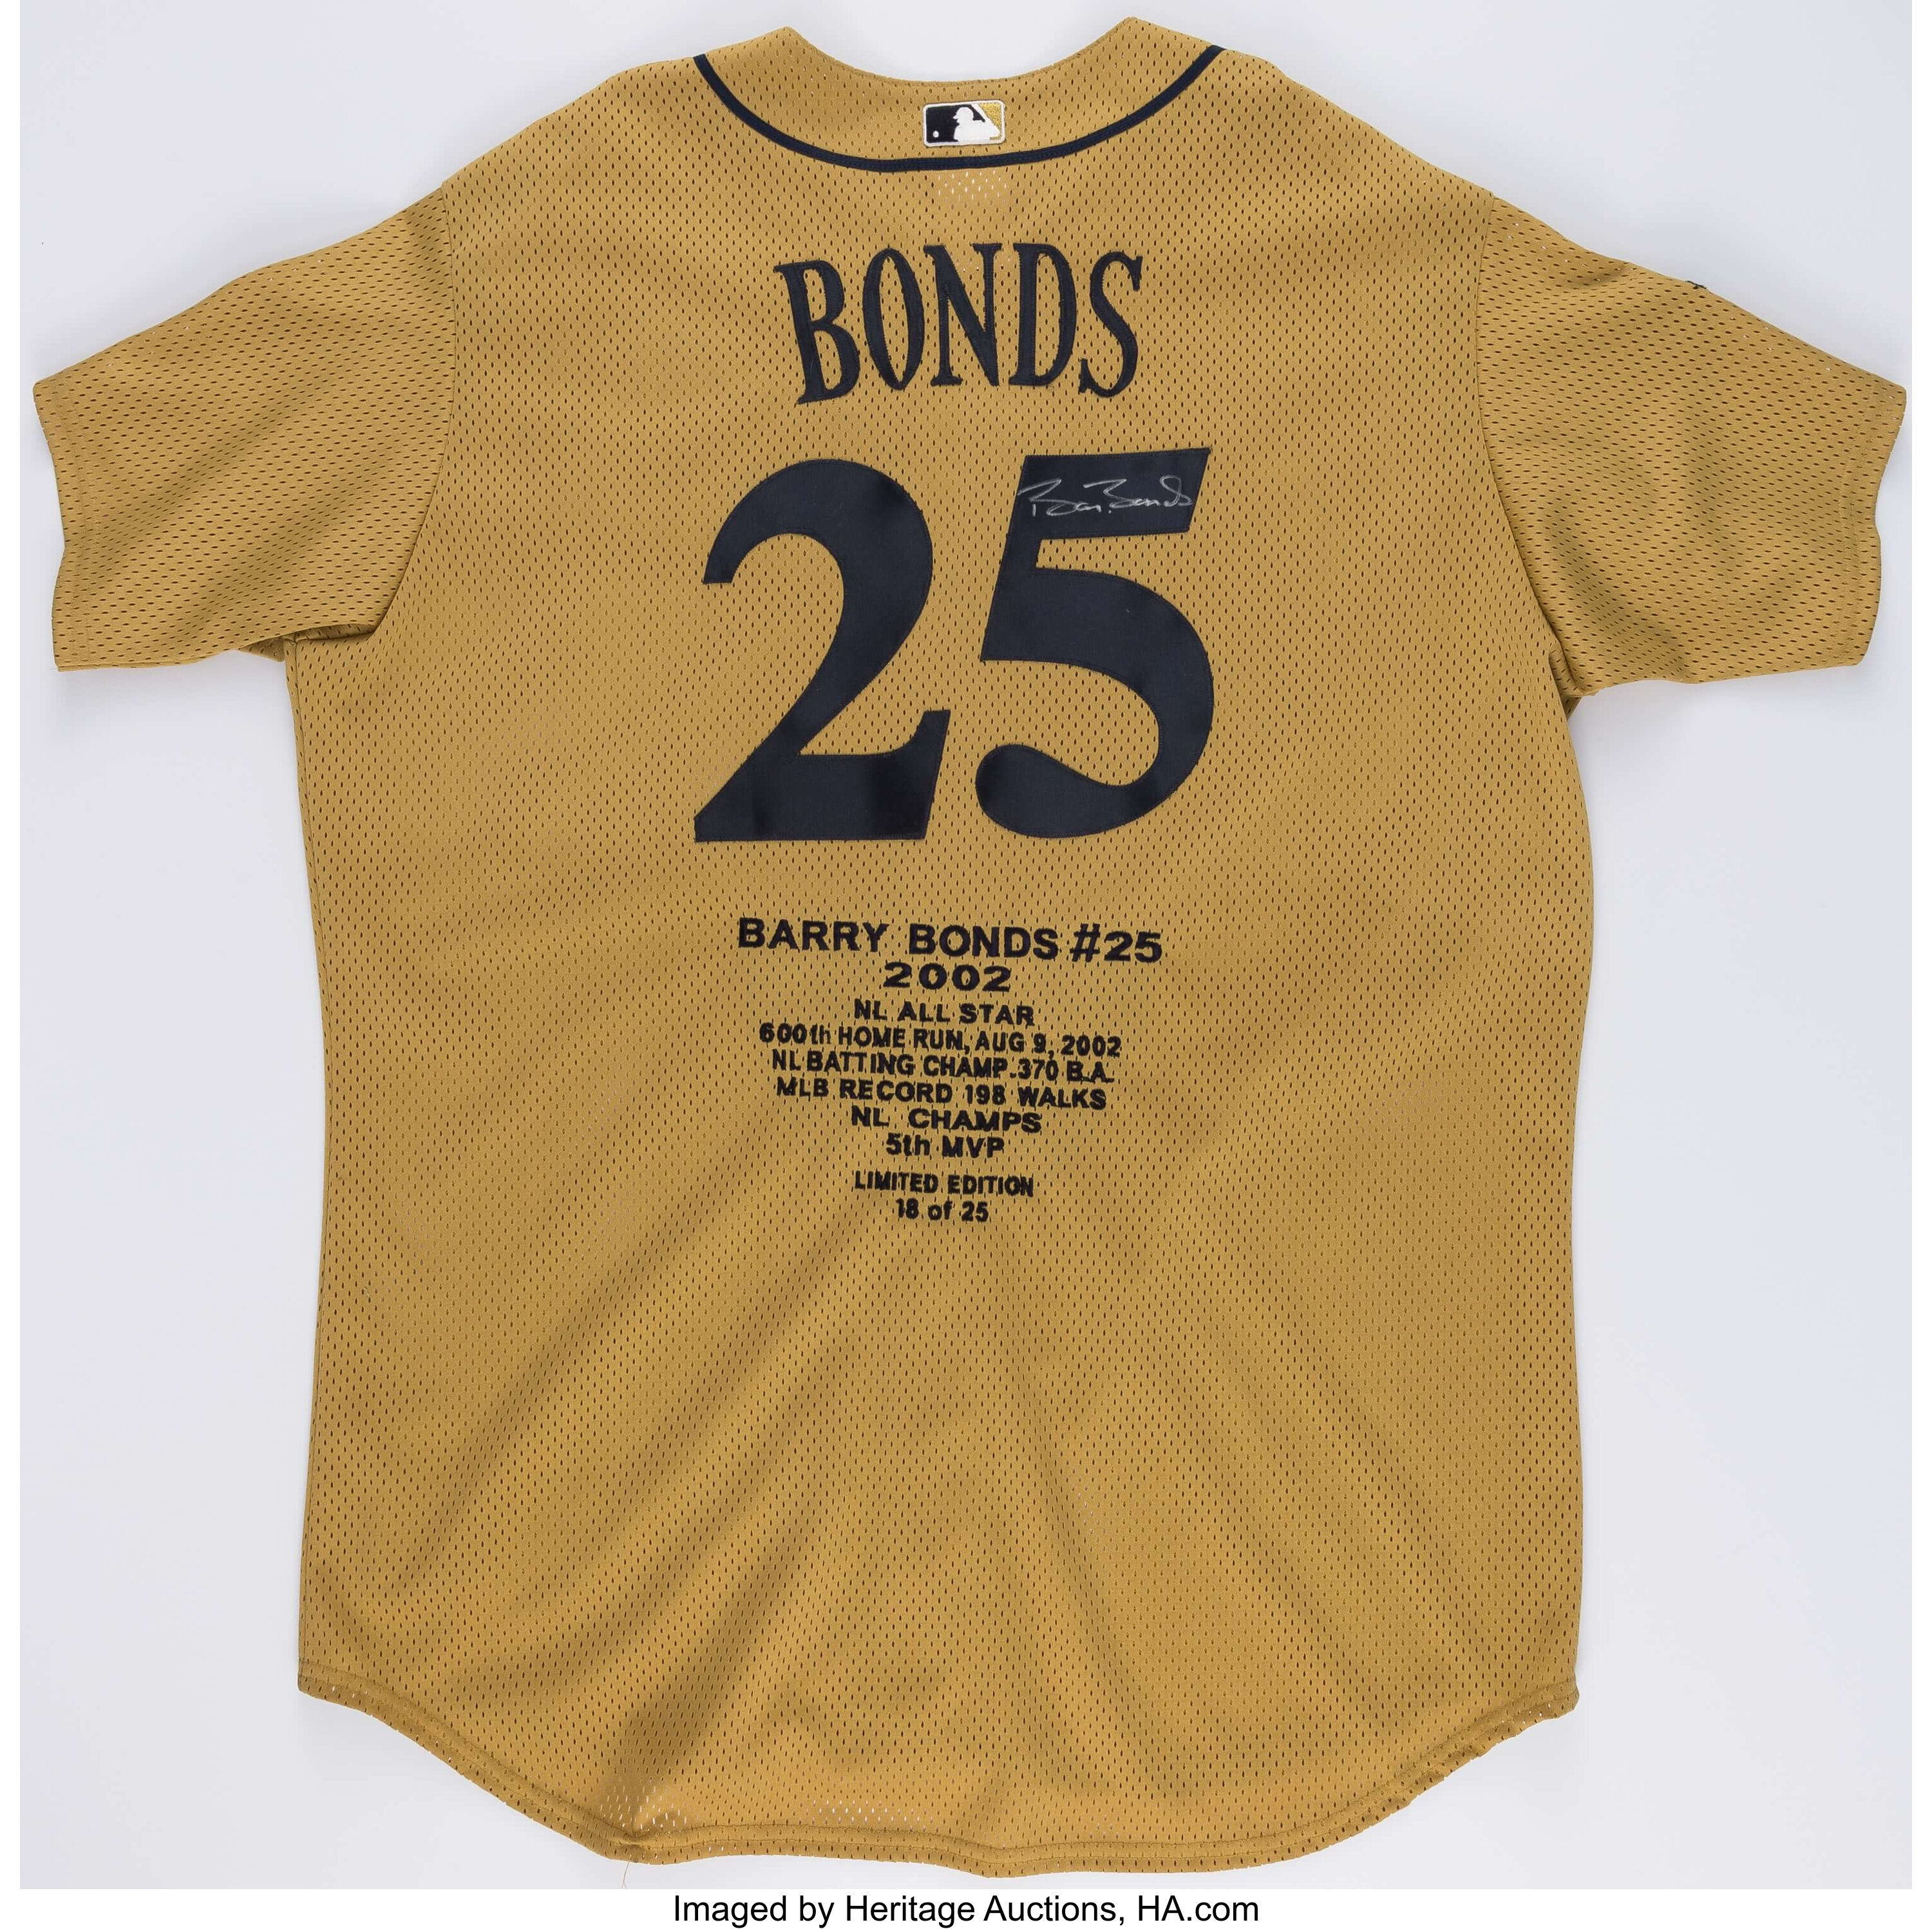 Barry Bonds Signed Jersey (Bonds)